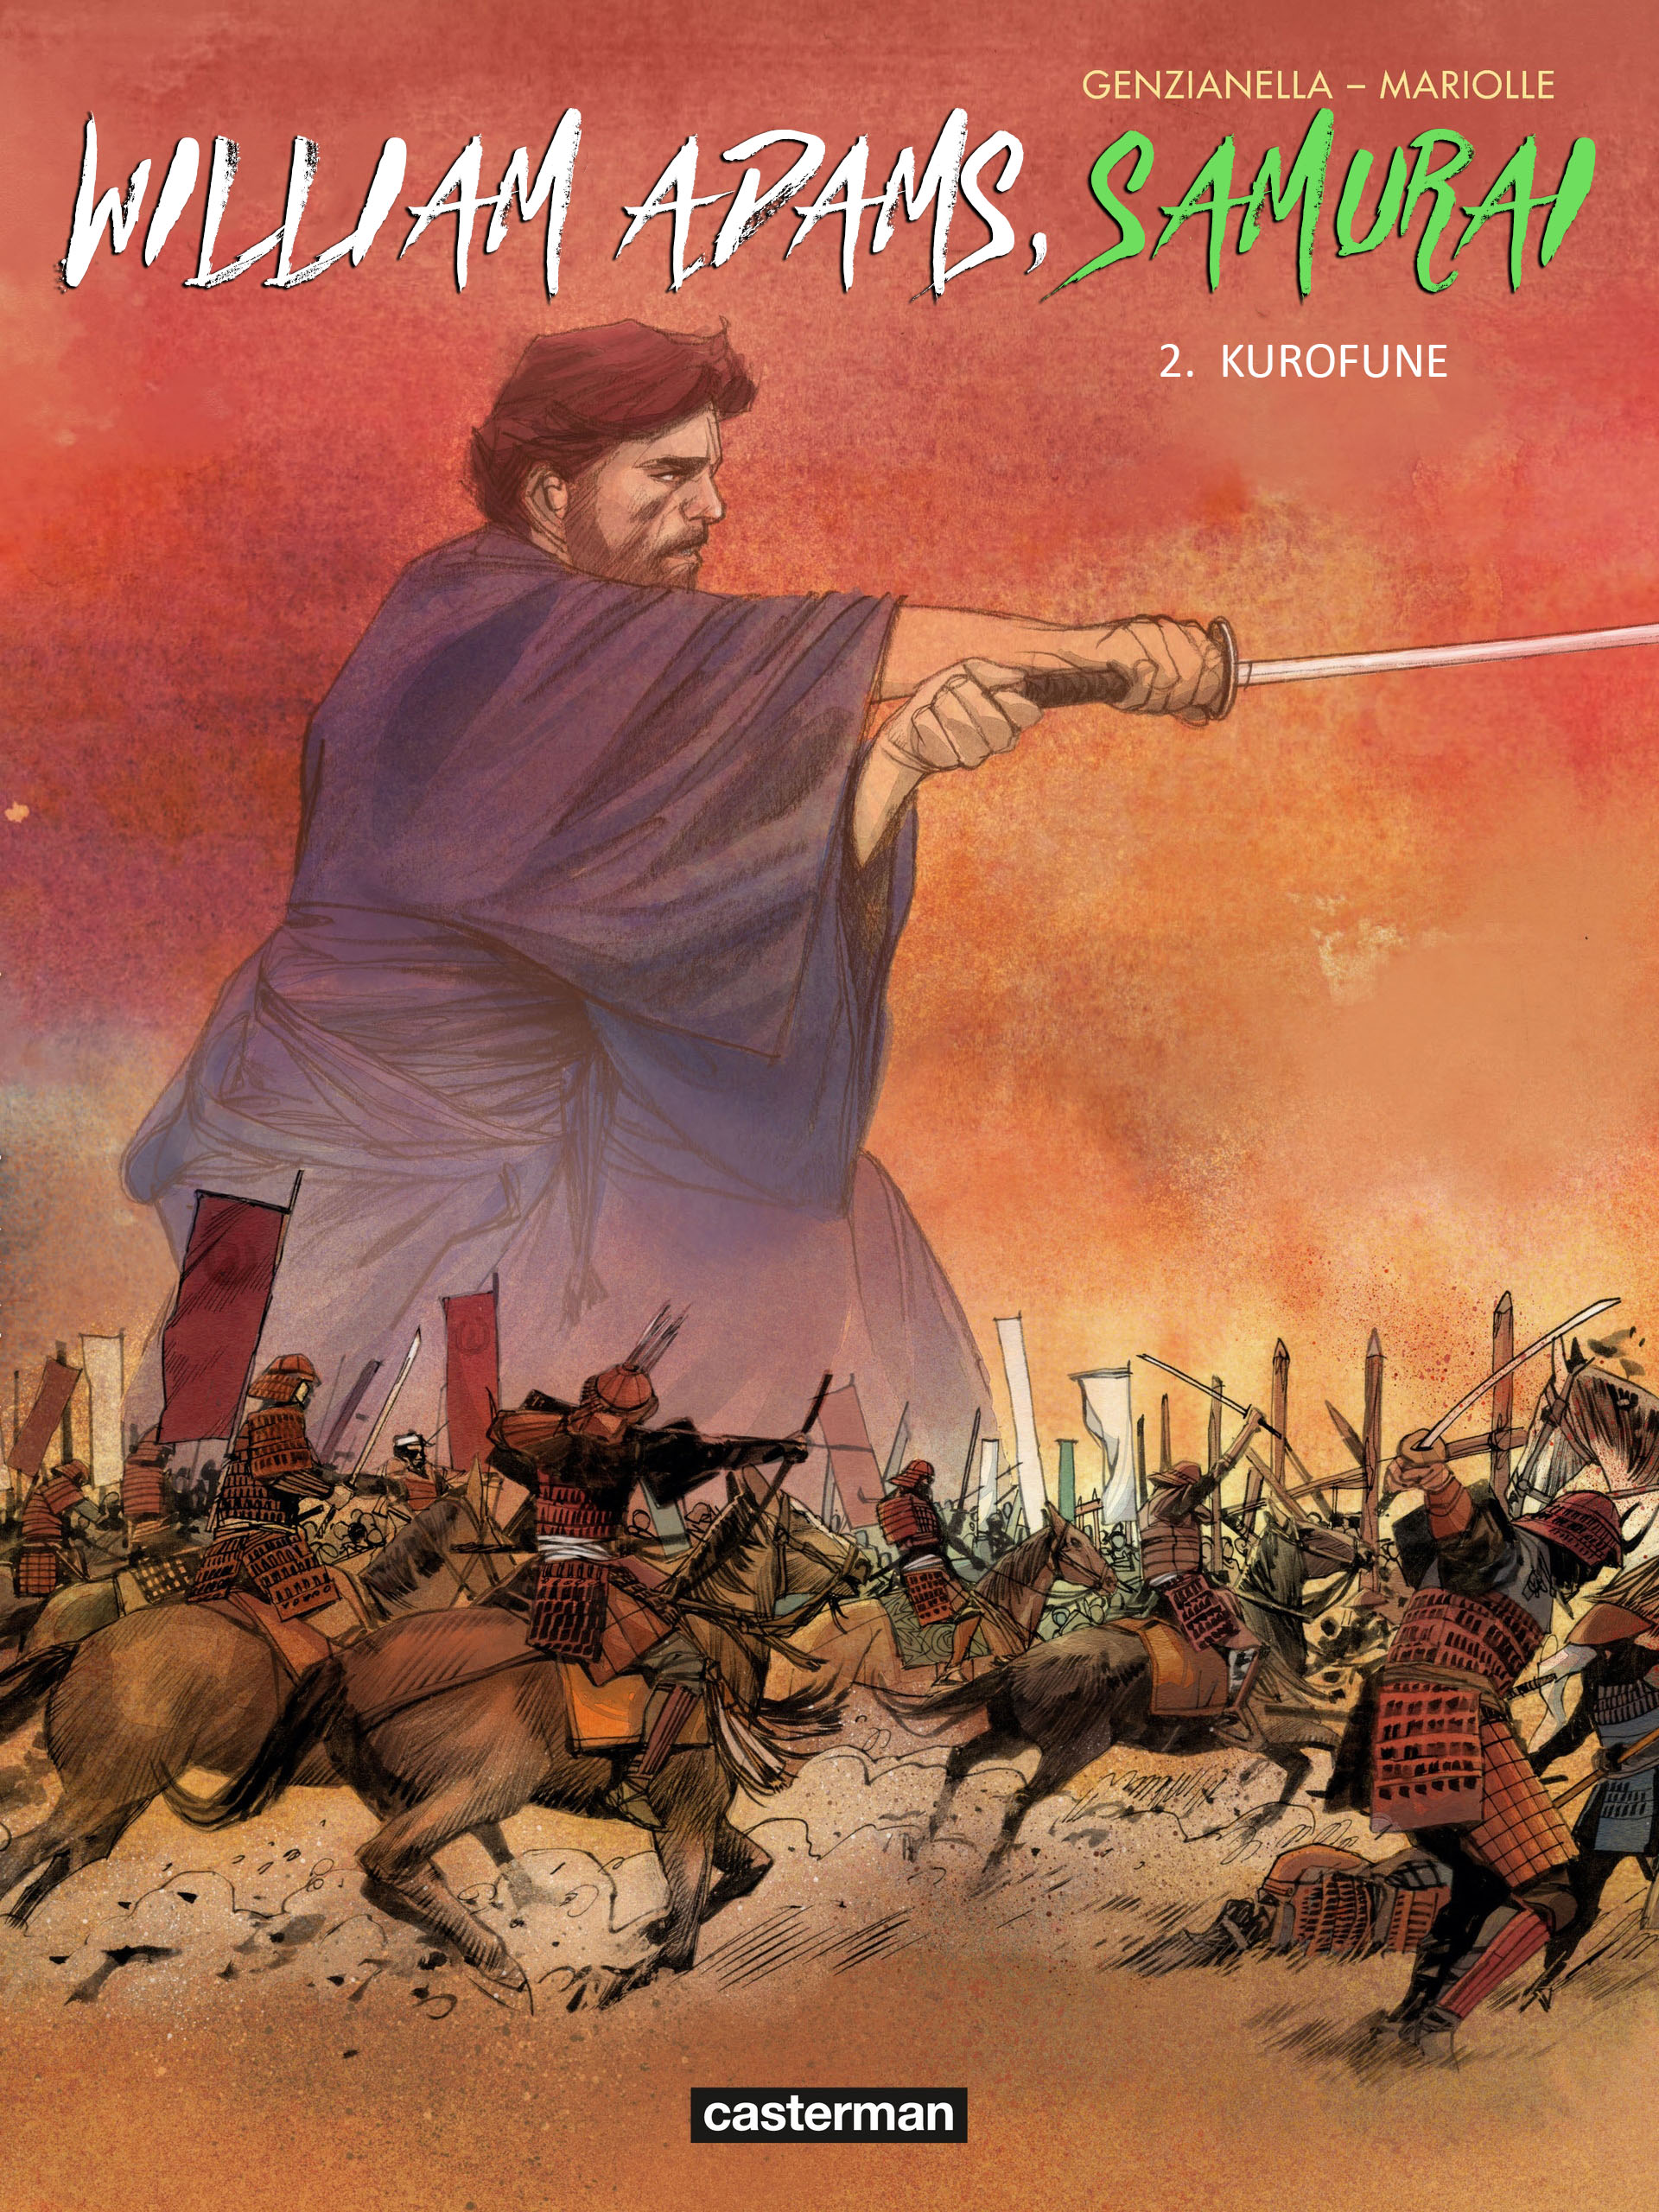 Read online William Adams, Samuraj comic -  Issue #2 - 1